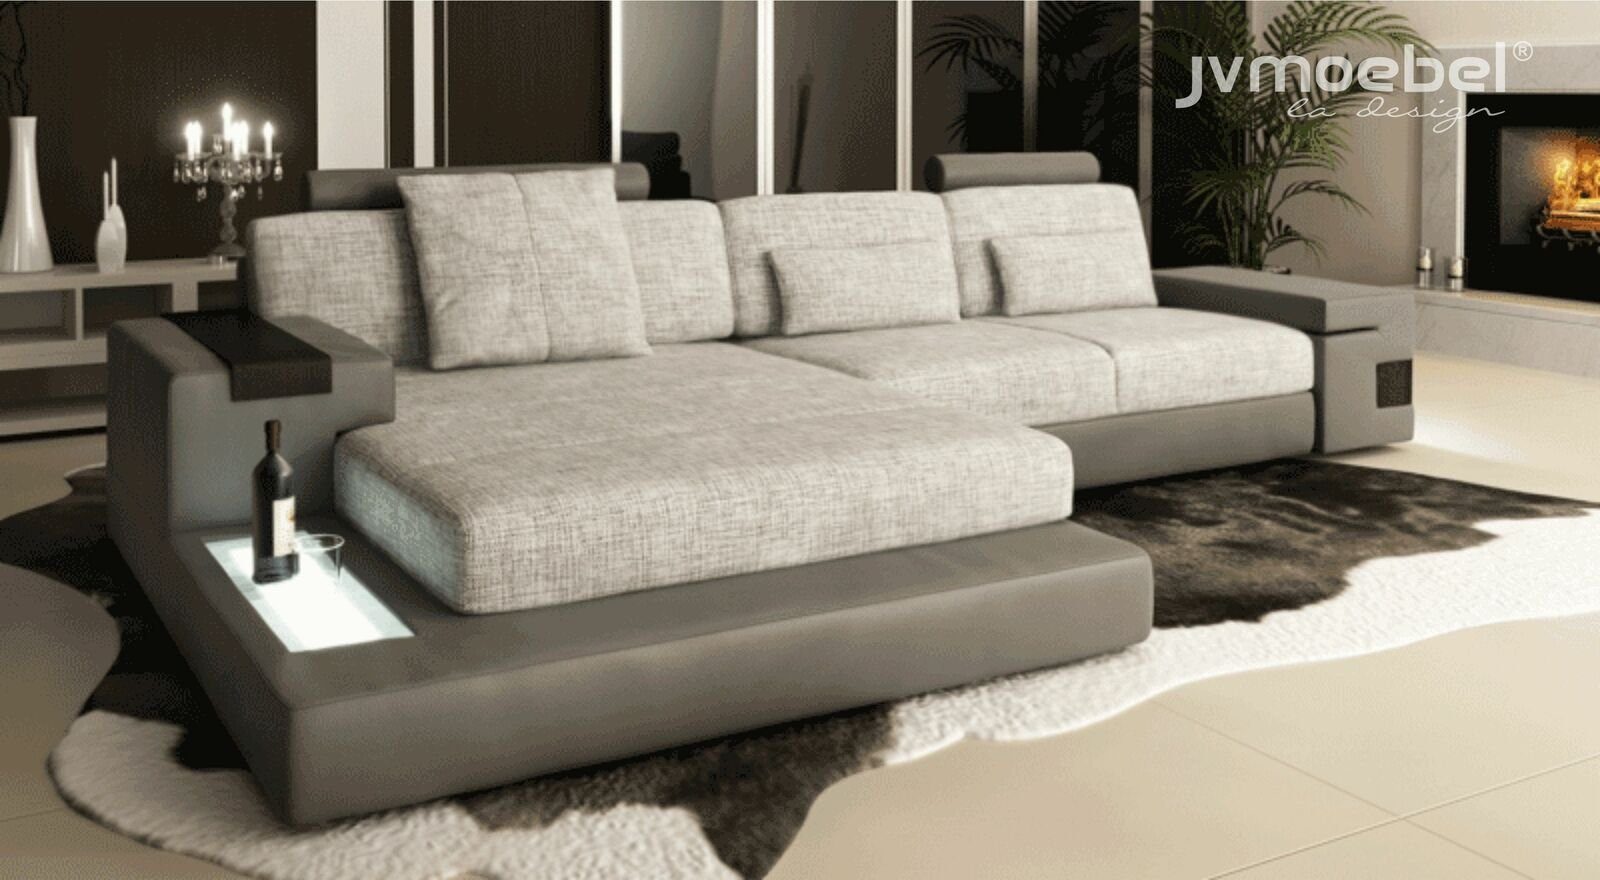 Wohnzimmer Design Ecksofa, LForm Ecke Sofa JVmoebel Couch Polstermöbel Modern